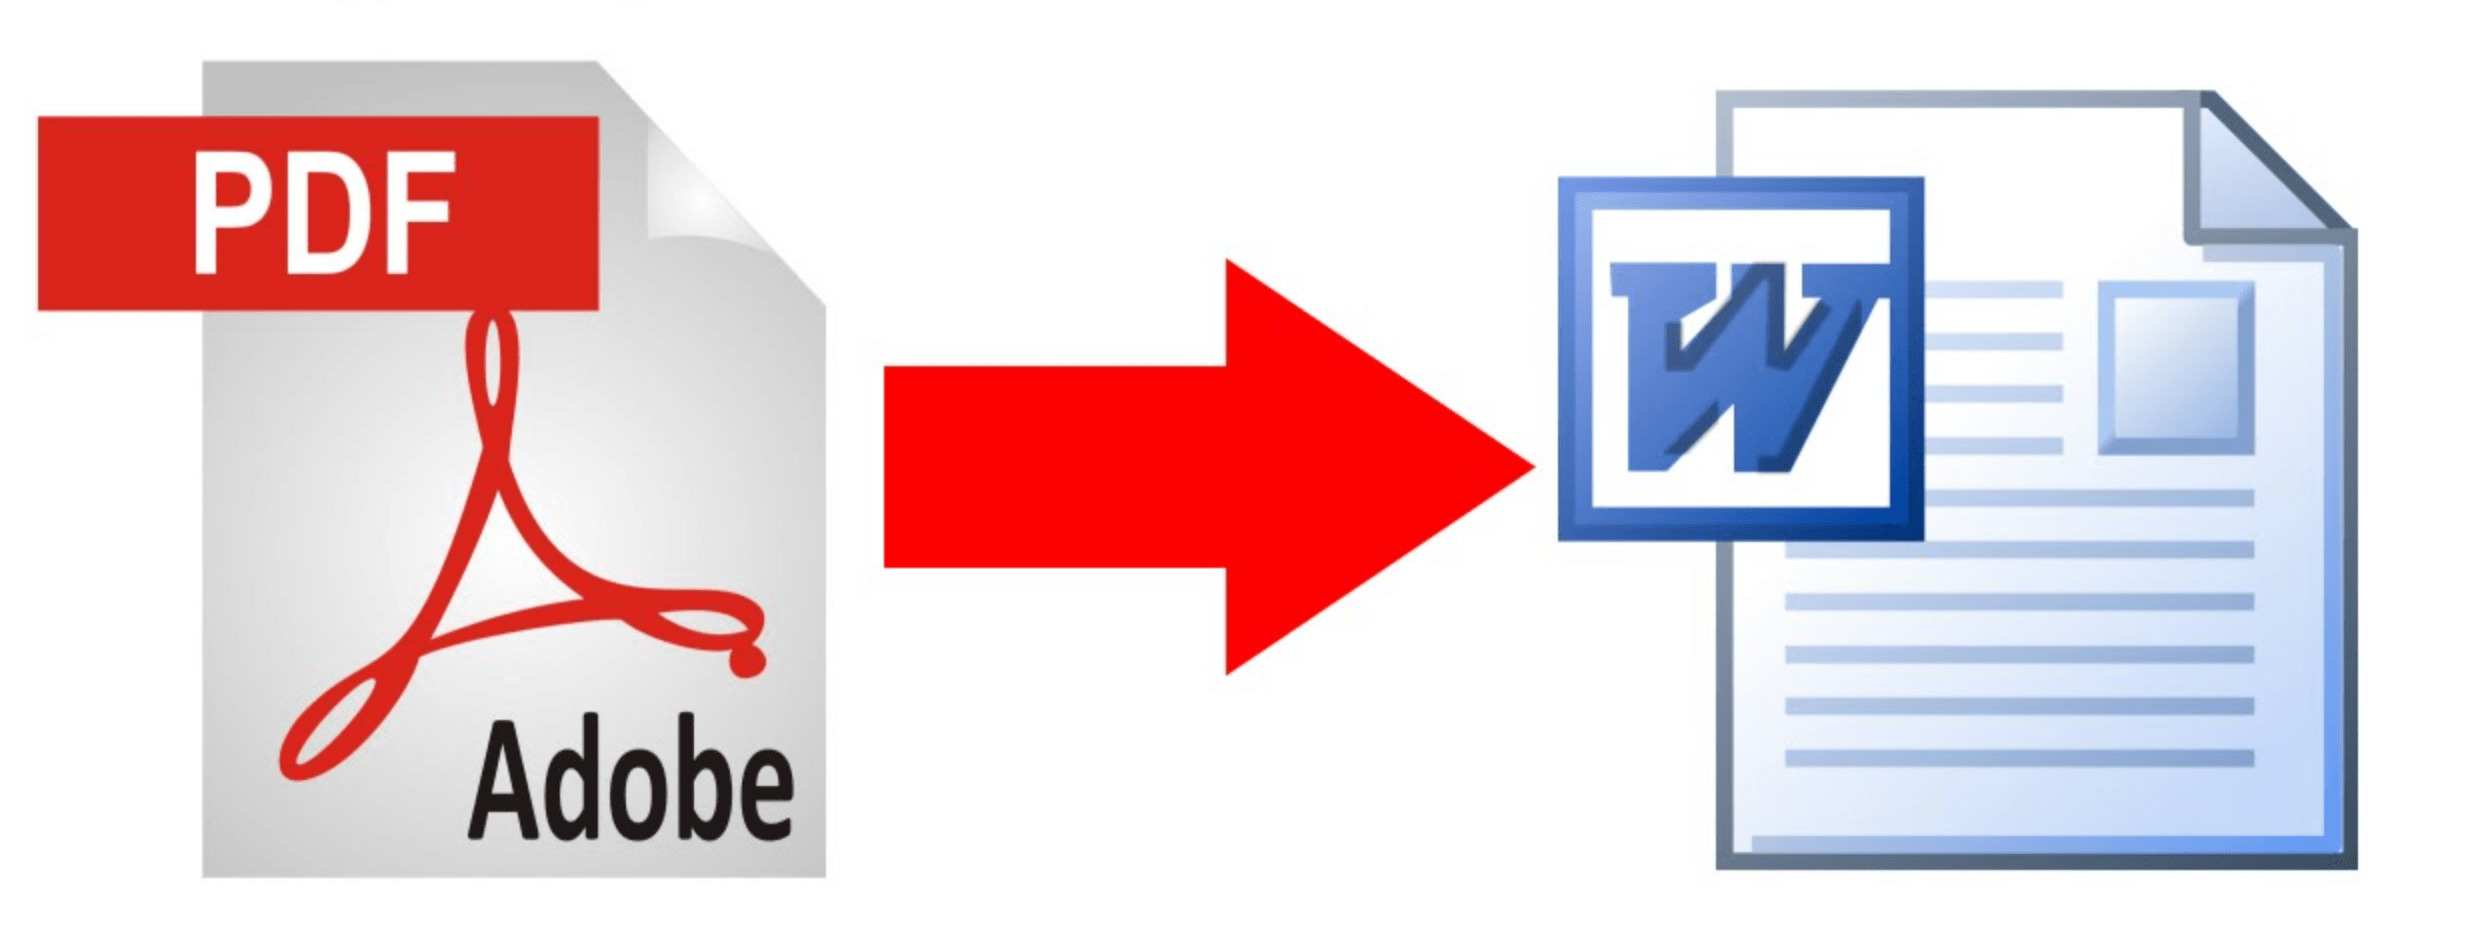 Các cách chuyển file PDF sang Word trên máy tính siêu đơn giản